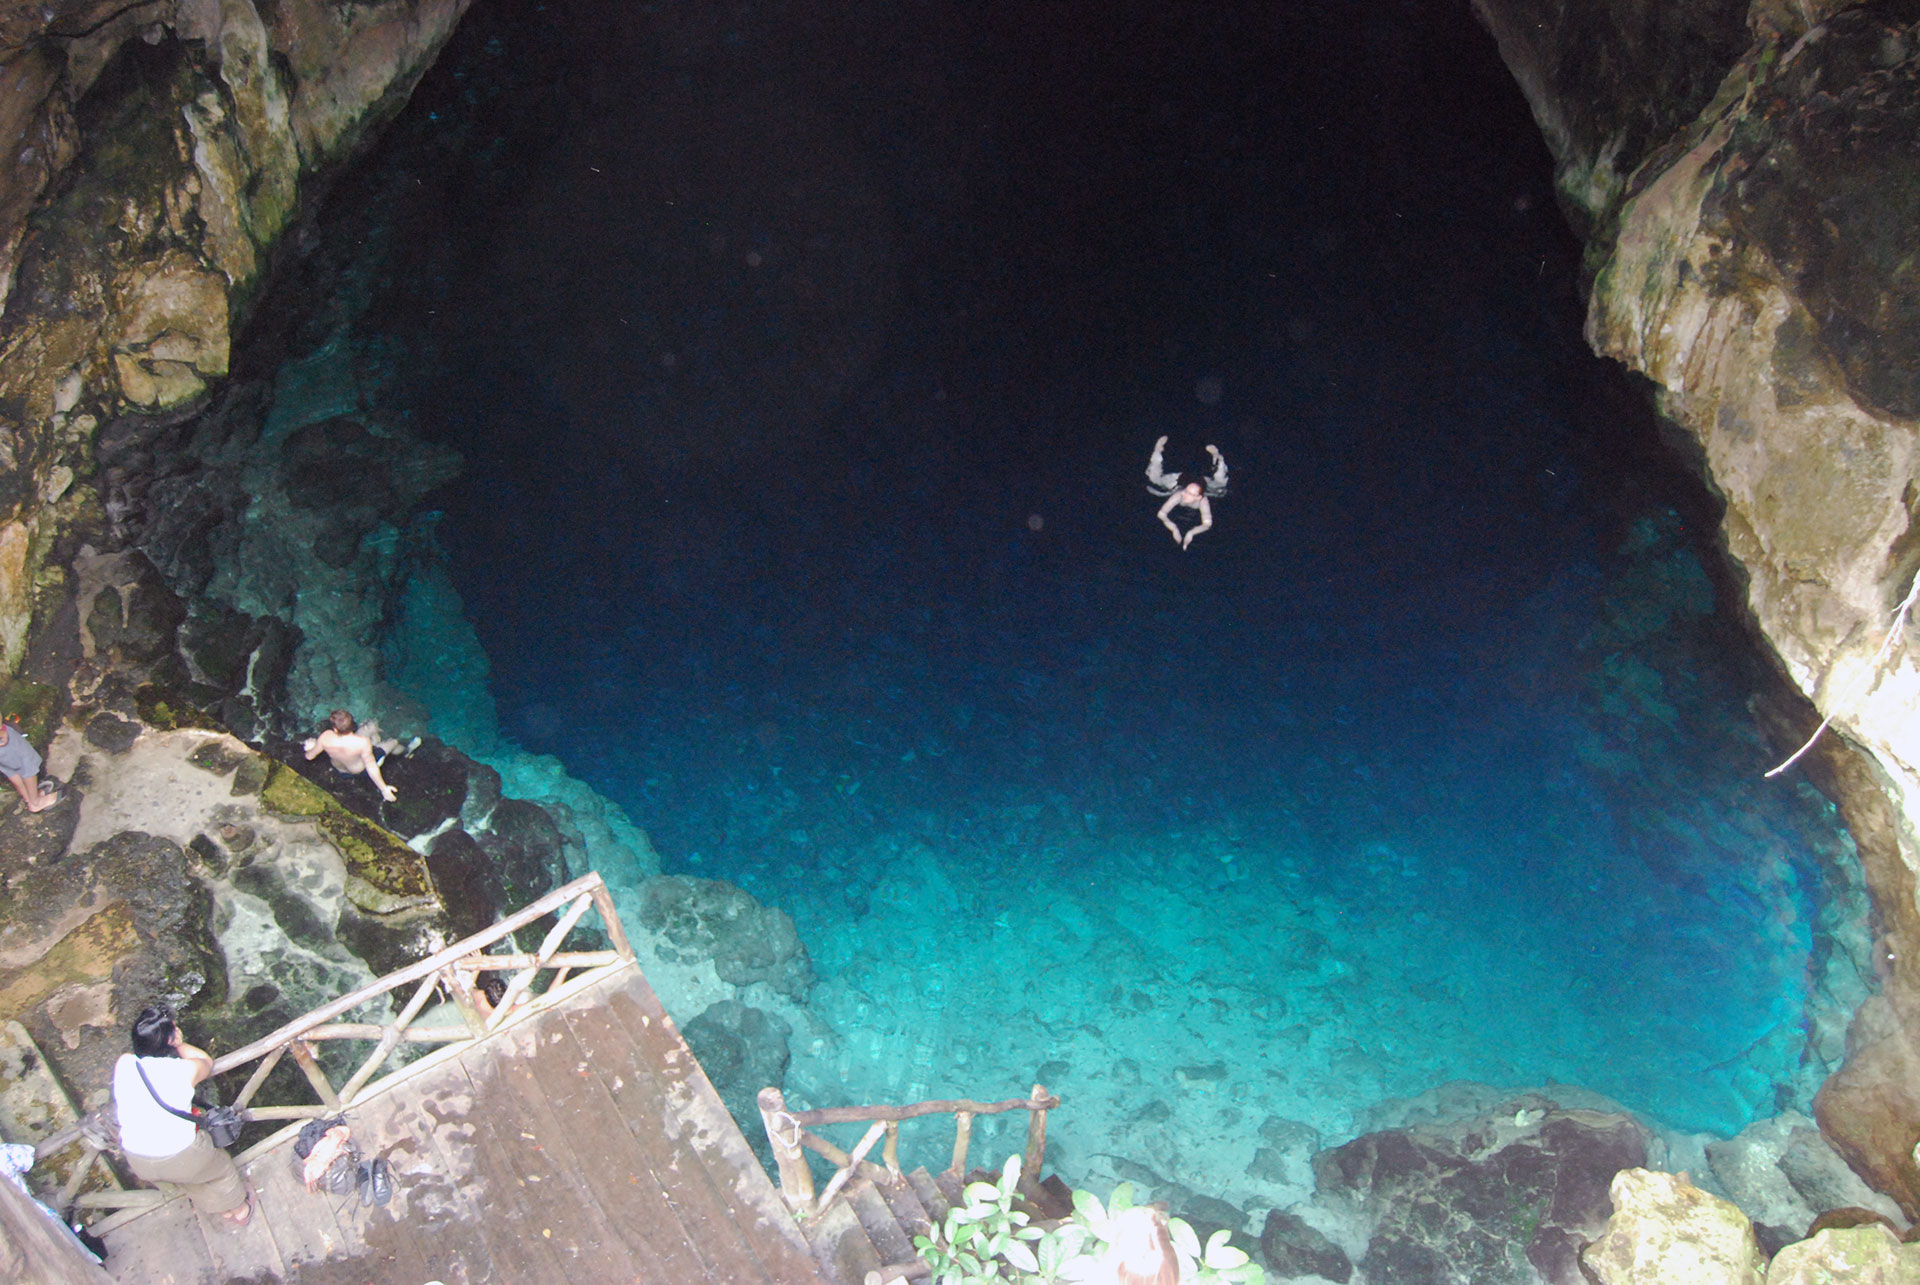 Swimming in a cenote in Mexico